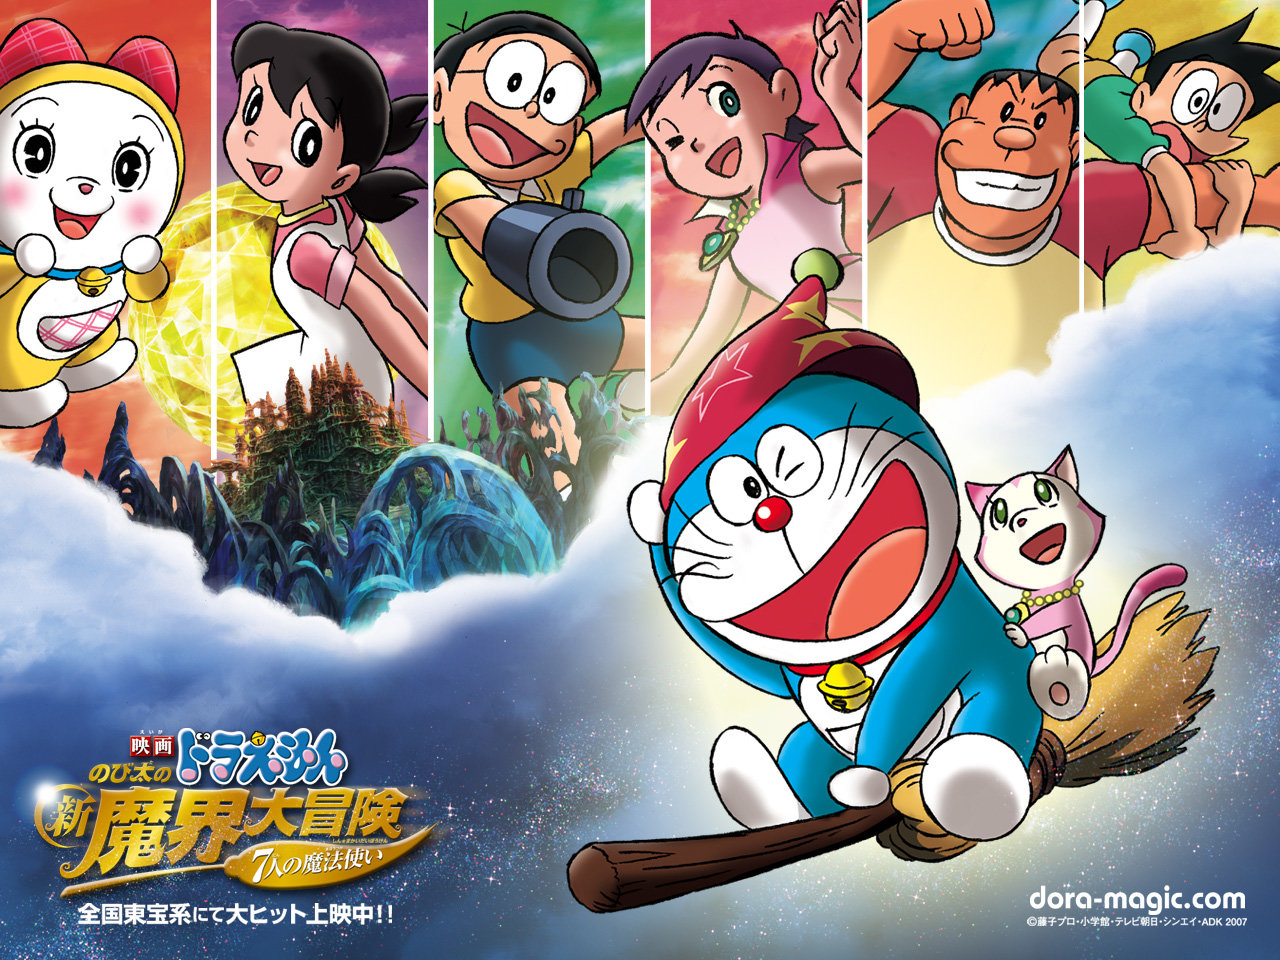 Download Hd Doraemon Pc Wallpaper Id - Doraemon And His Friends - 1280x960  Wallpaper 